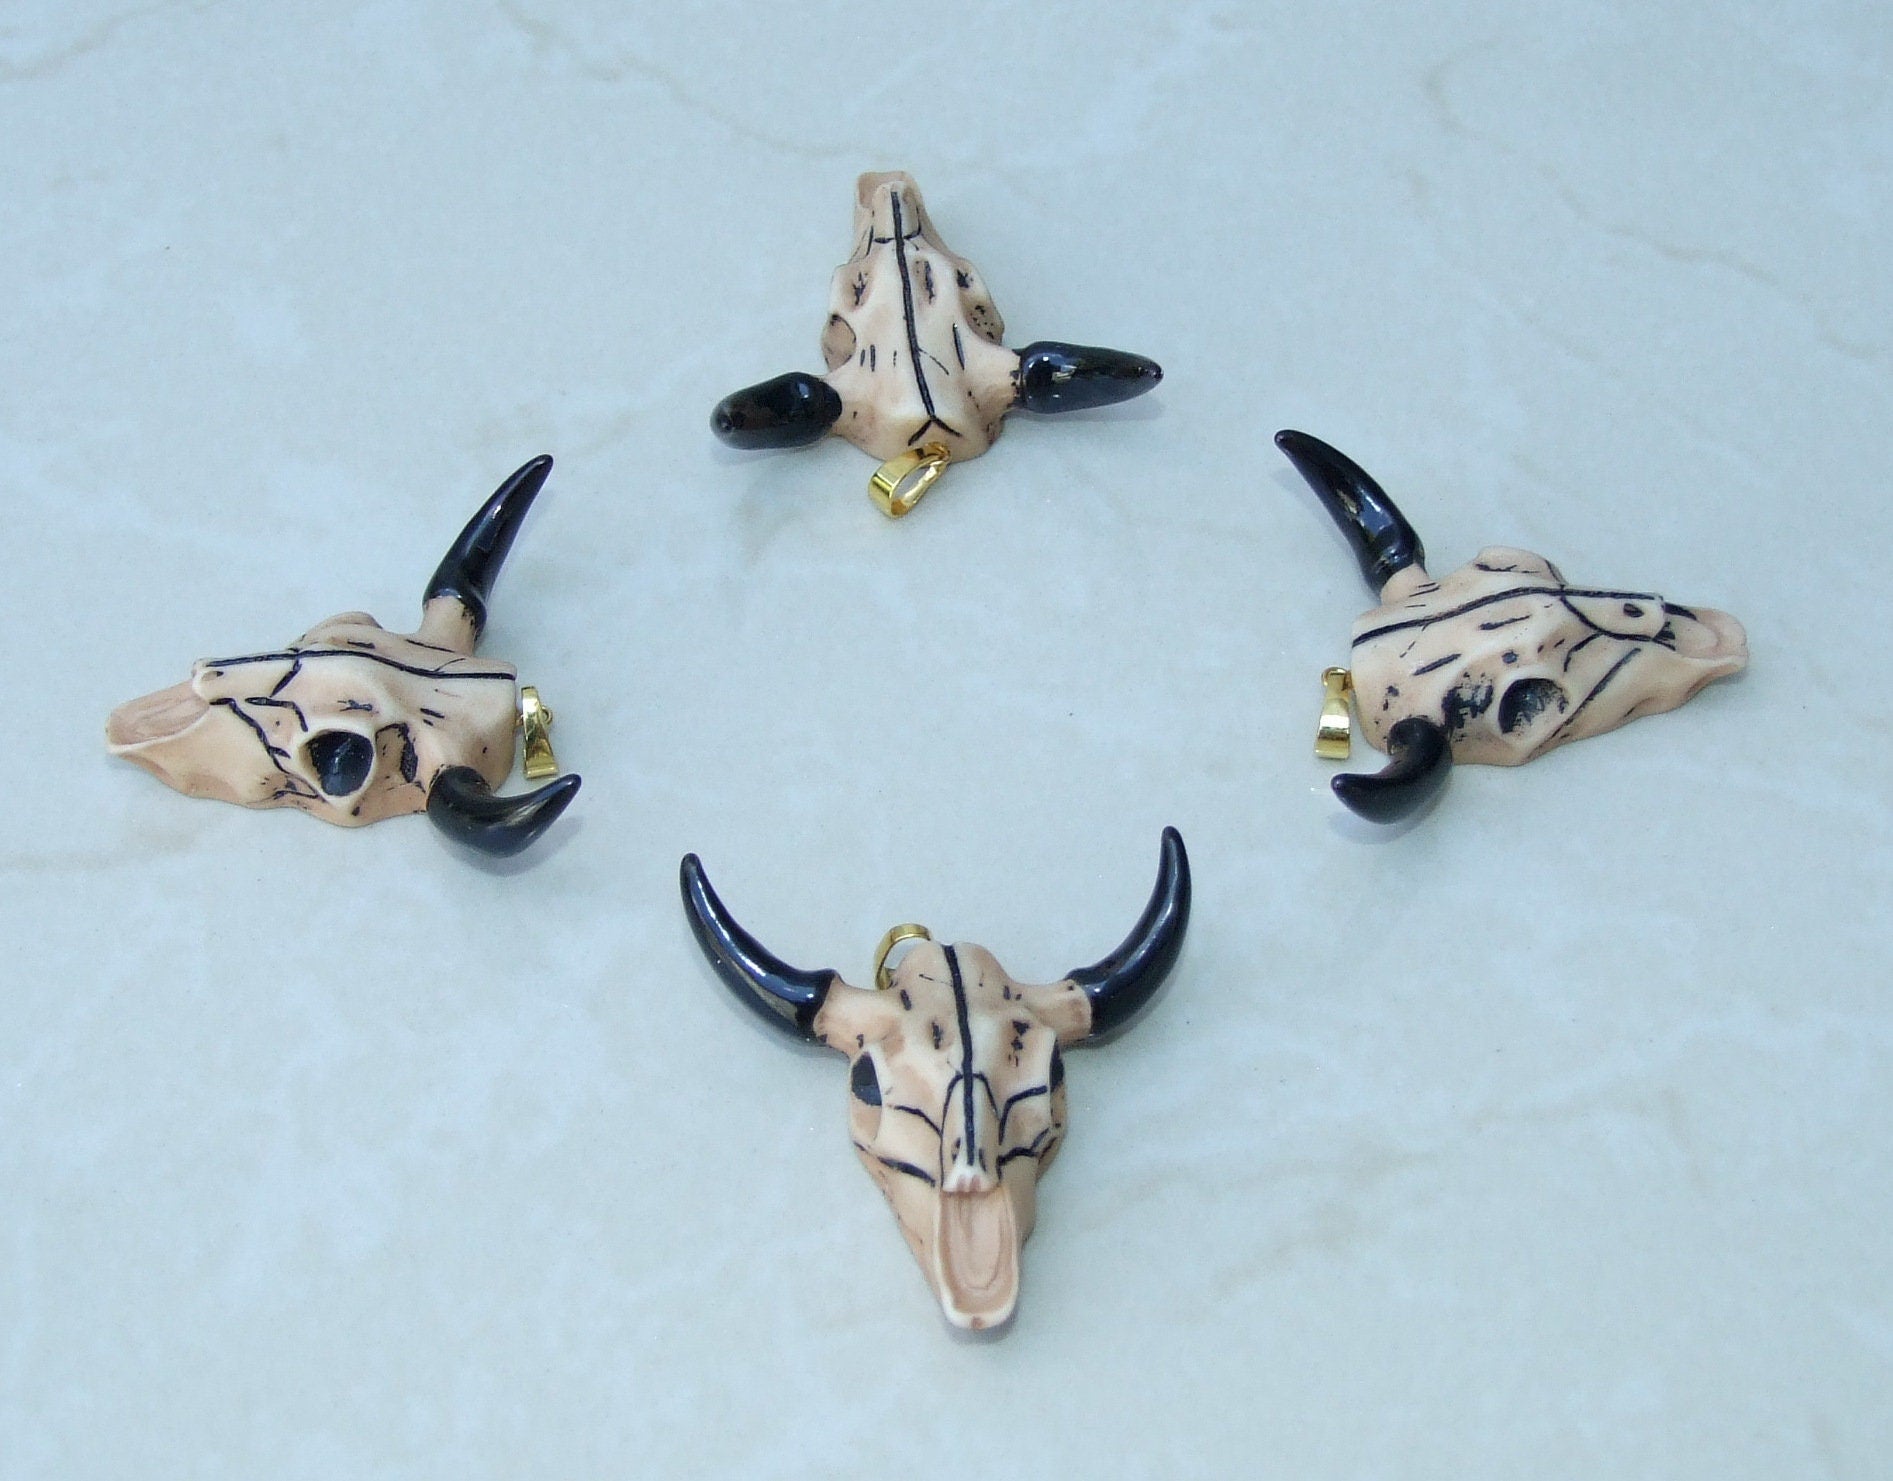 Longhorn Cattle Skull Pendant, Skull Pendant, Buffalo Skull Pendant, Cow Horn, Charm, Football, Sports, Gold Plated - 45mm x 45mm